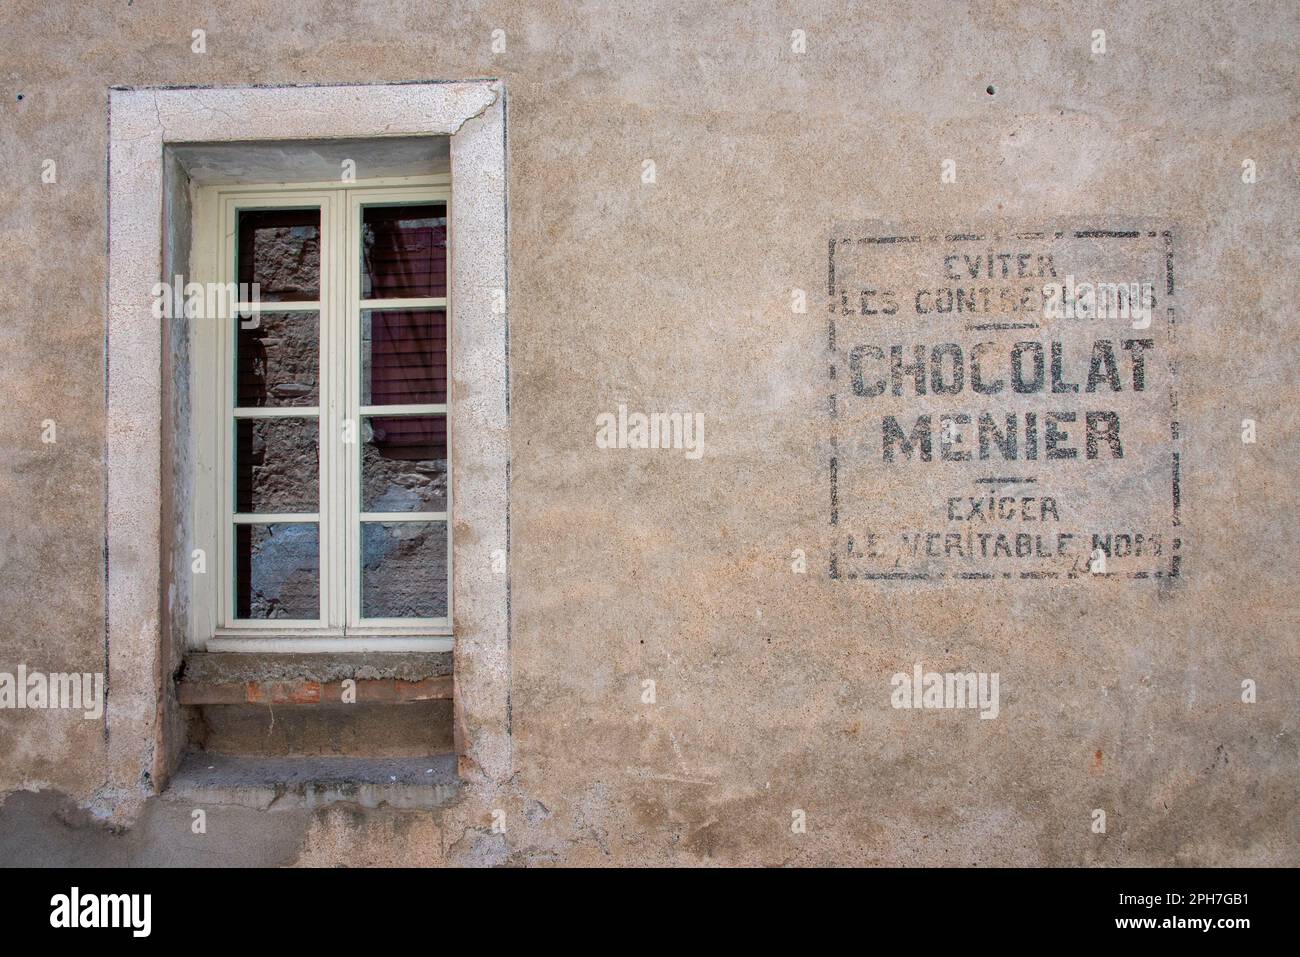 Chocolat Menier: Ein verblichenes Zeichen einer vergessenen Süßwarenmarke an einer Fassade im alten Dorf Roquebrun im Orb-Flusstal Südfrankreichs. Stockfoto